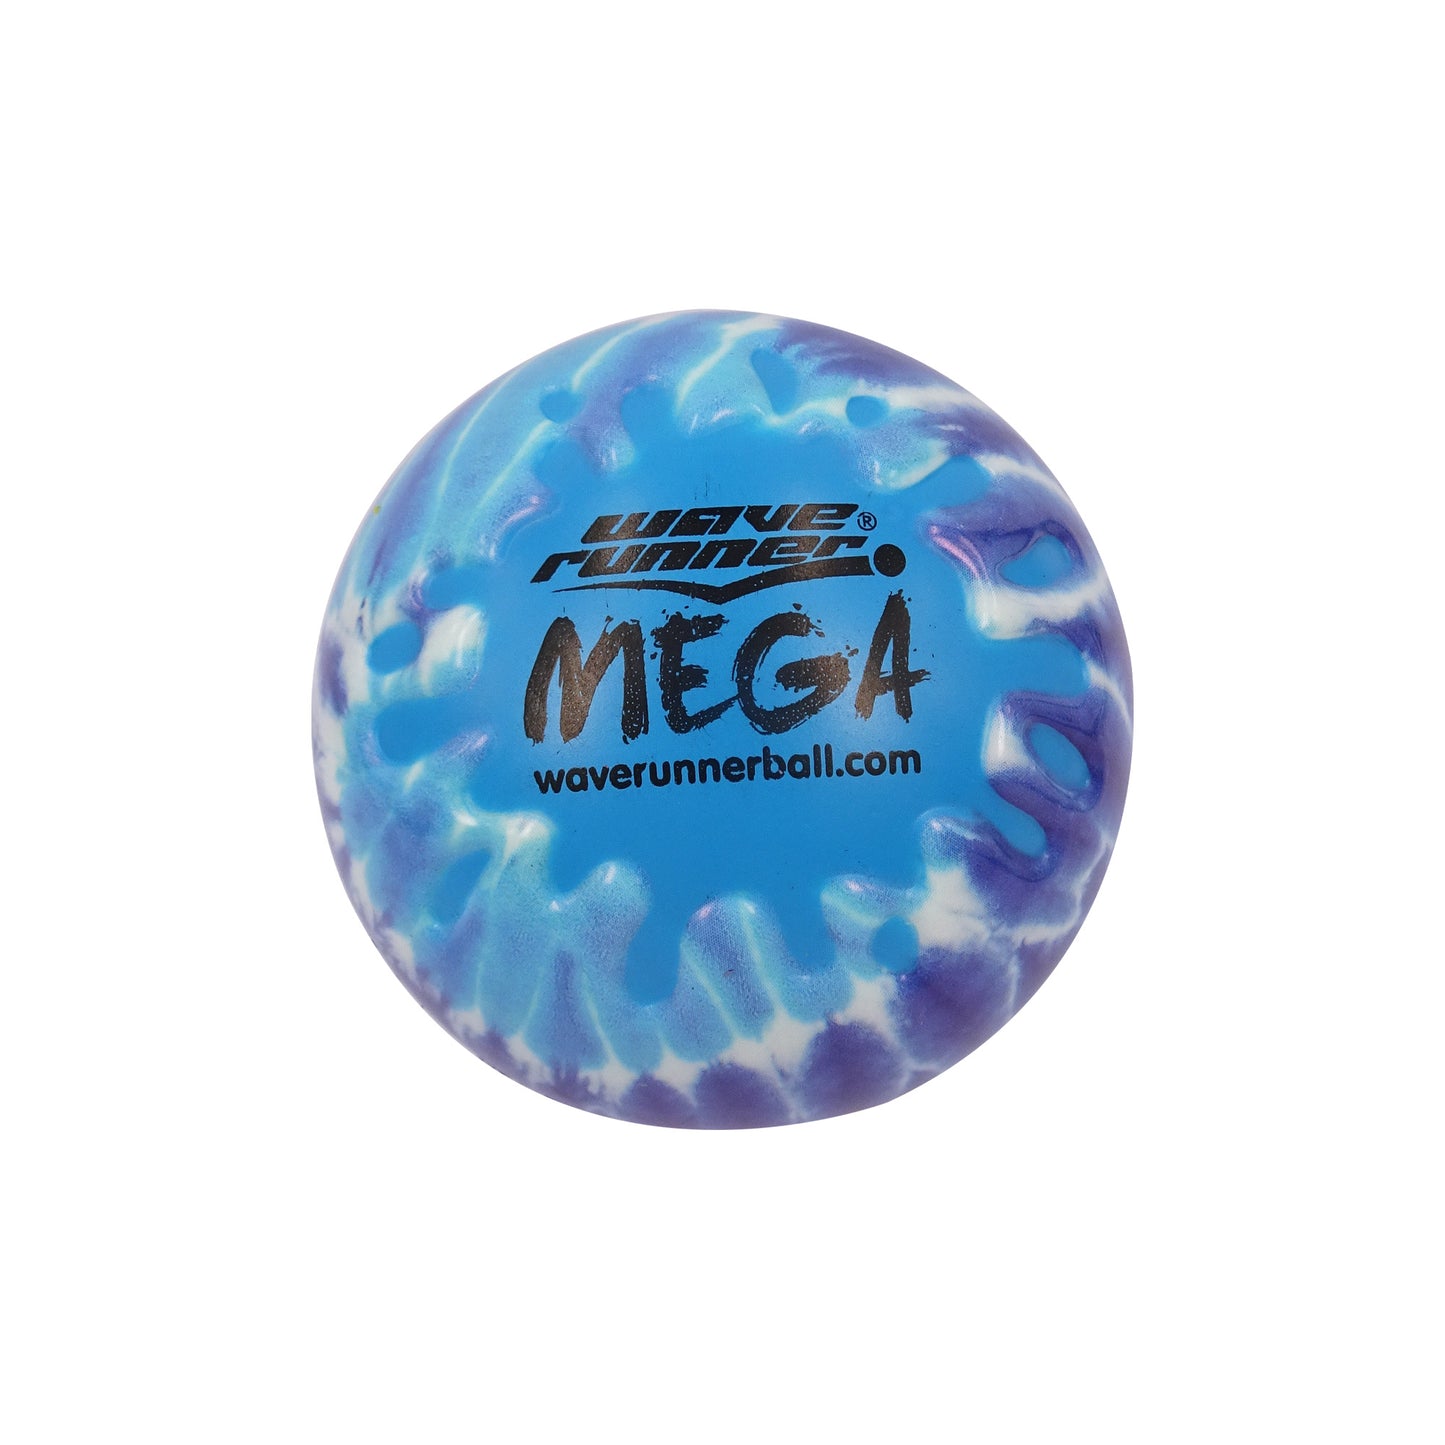 MEGA Ball Tie Dye Series